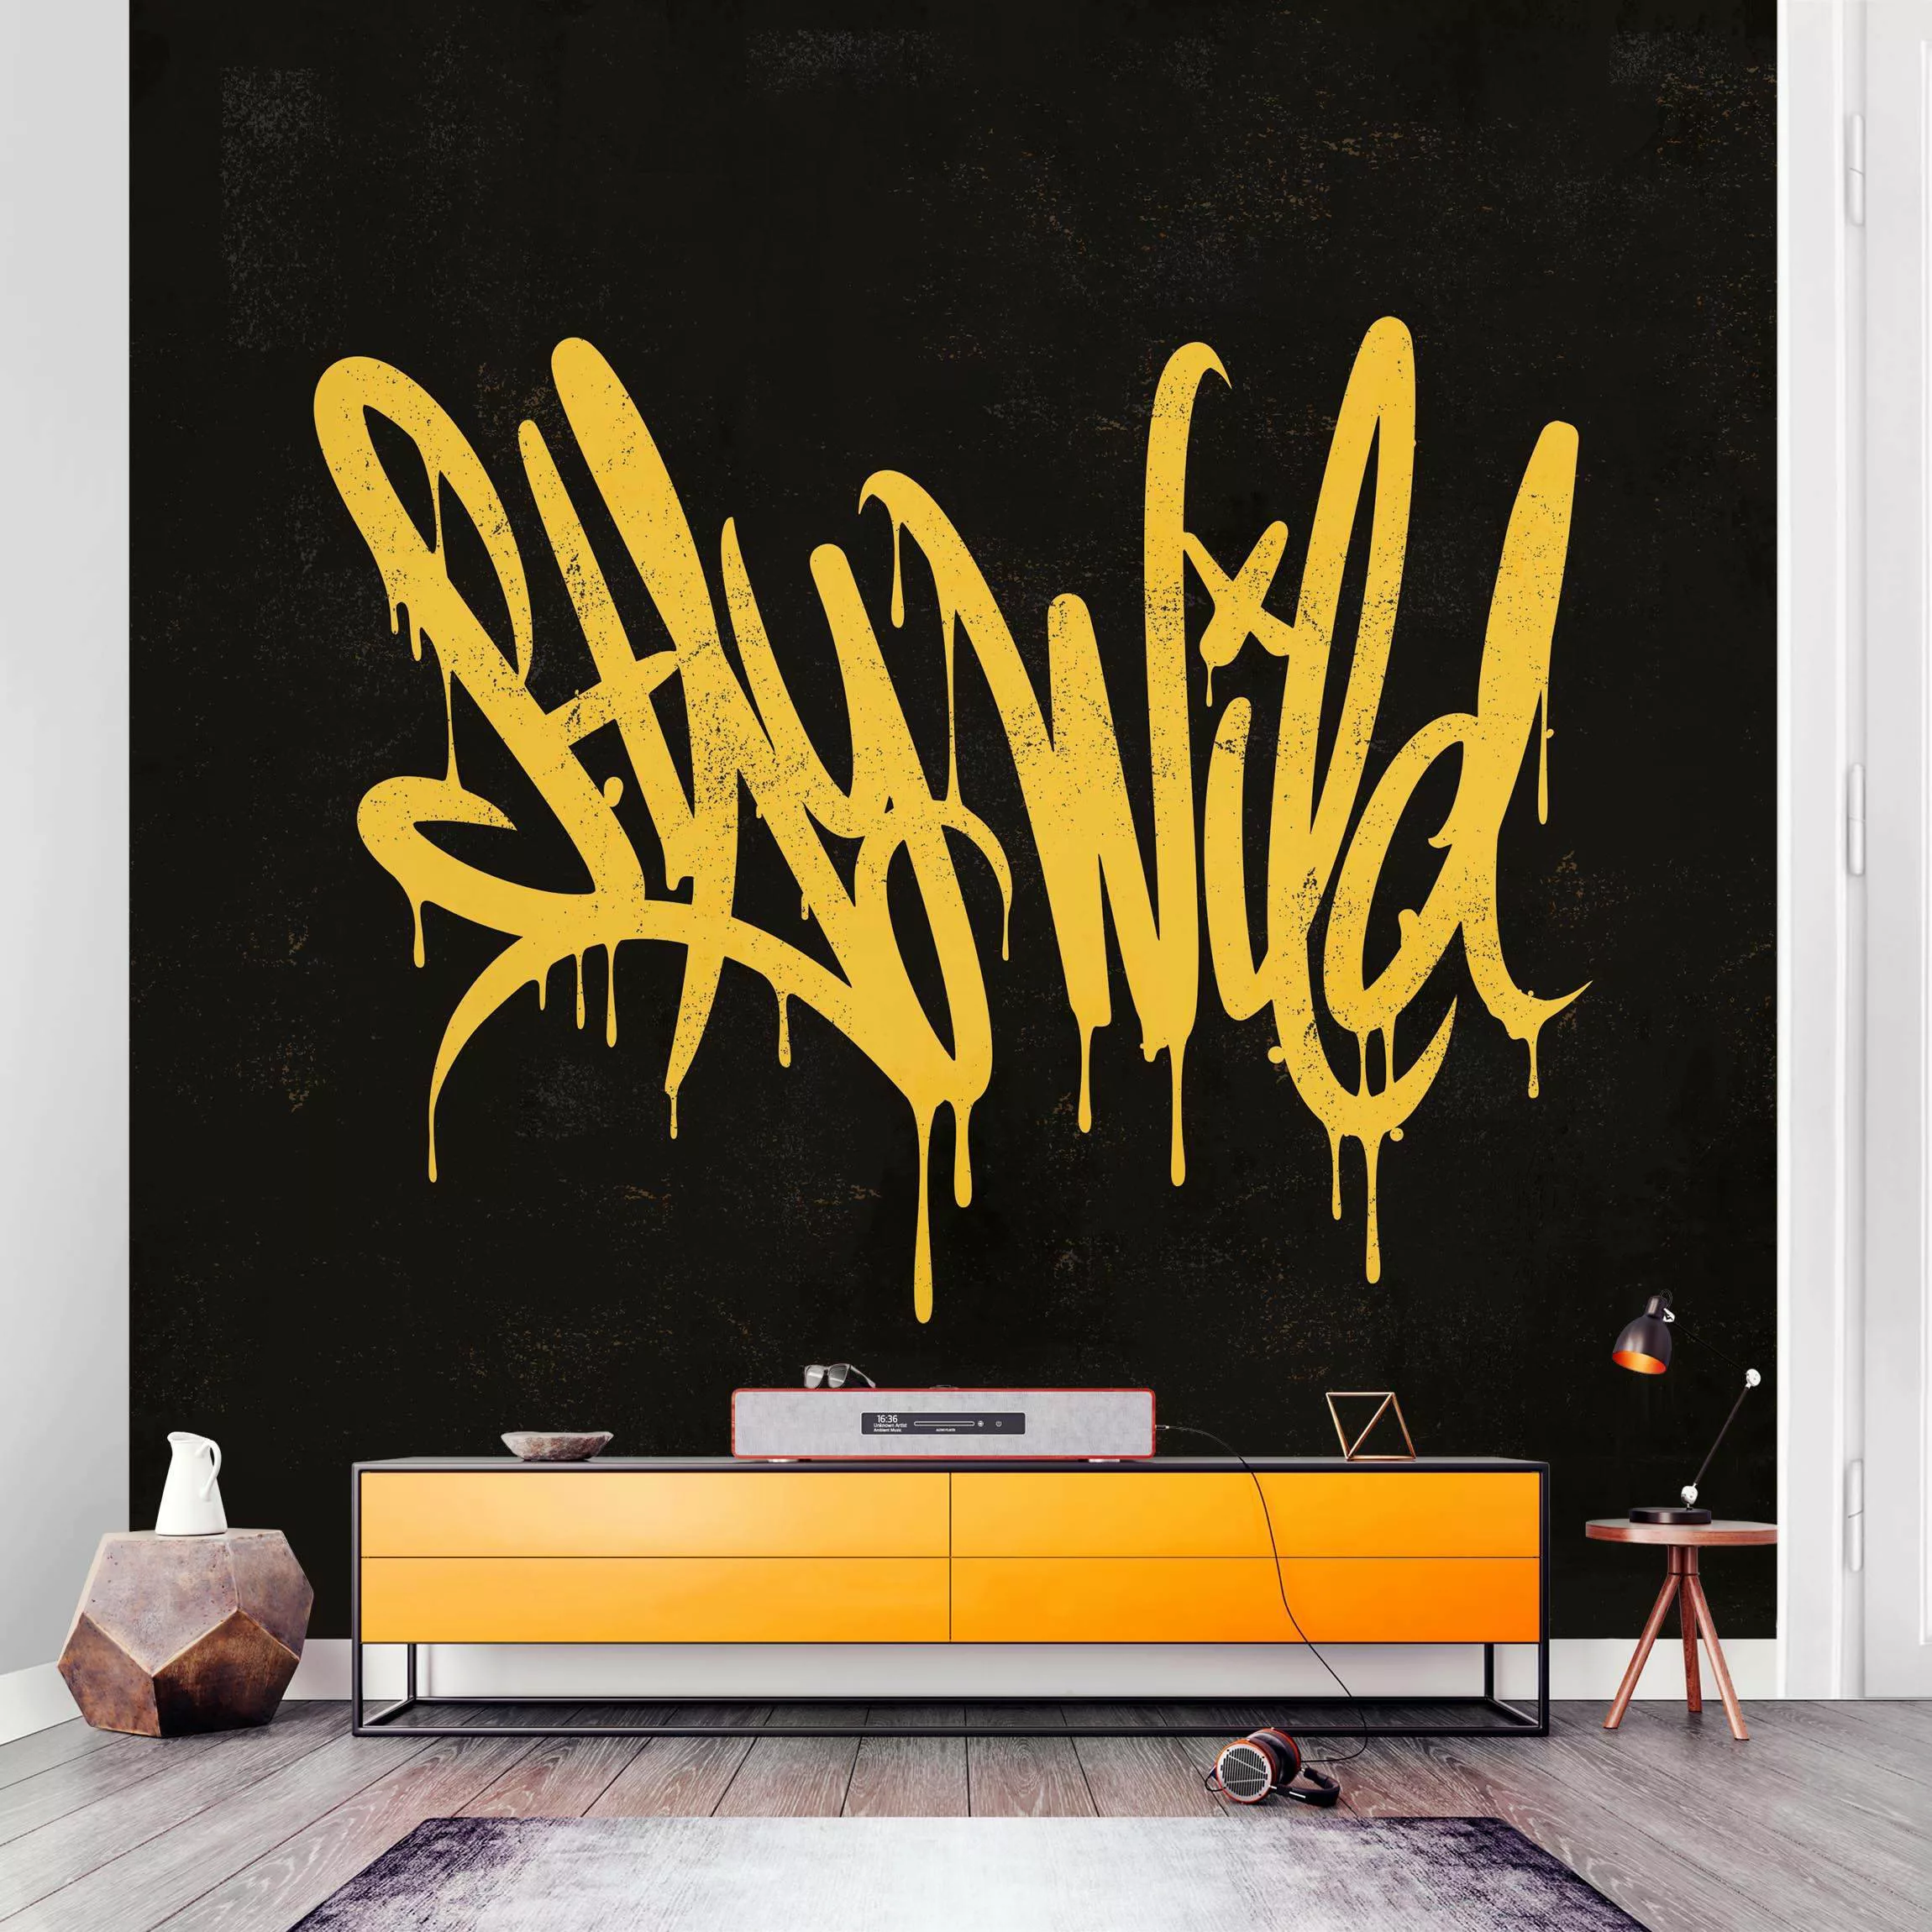 Fototapete Graffiti Art Stay Wild günstig online kaufen